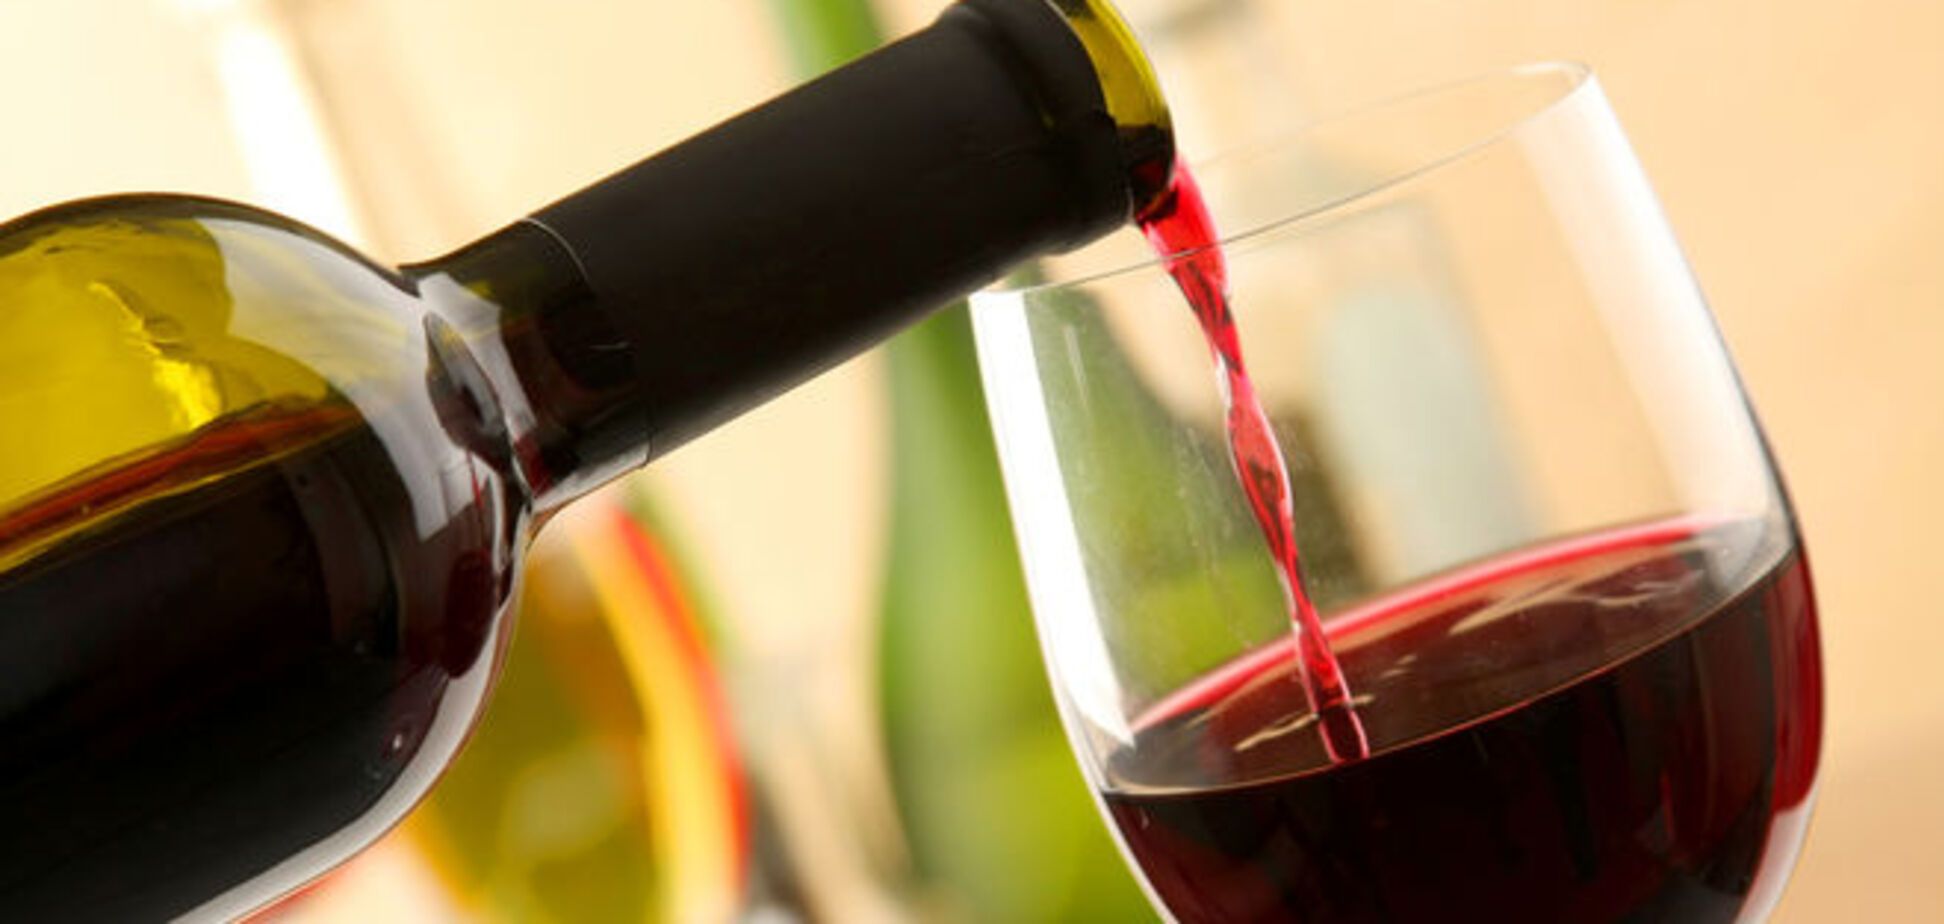 Ученые рекомендовали пить красное вино, чтобы побороть лень